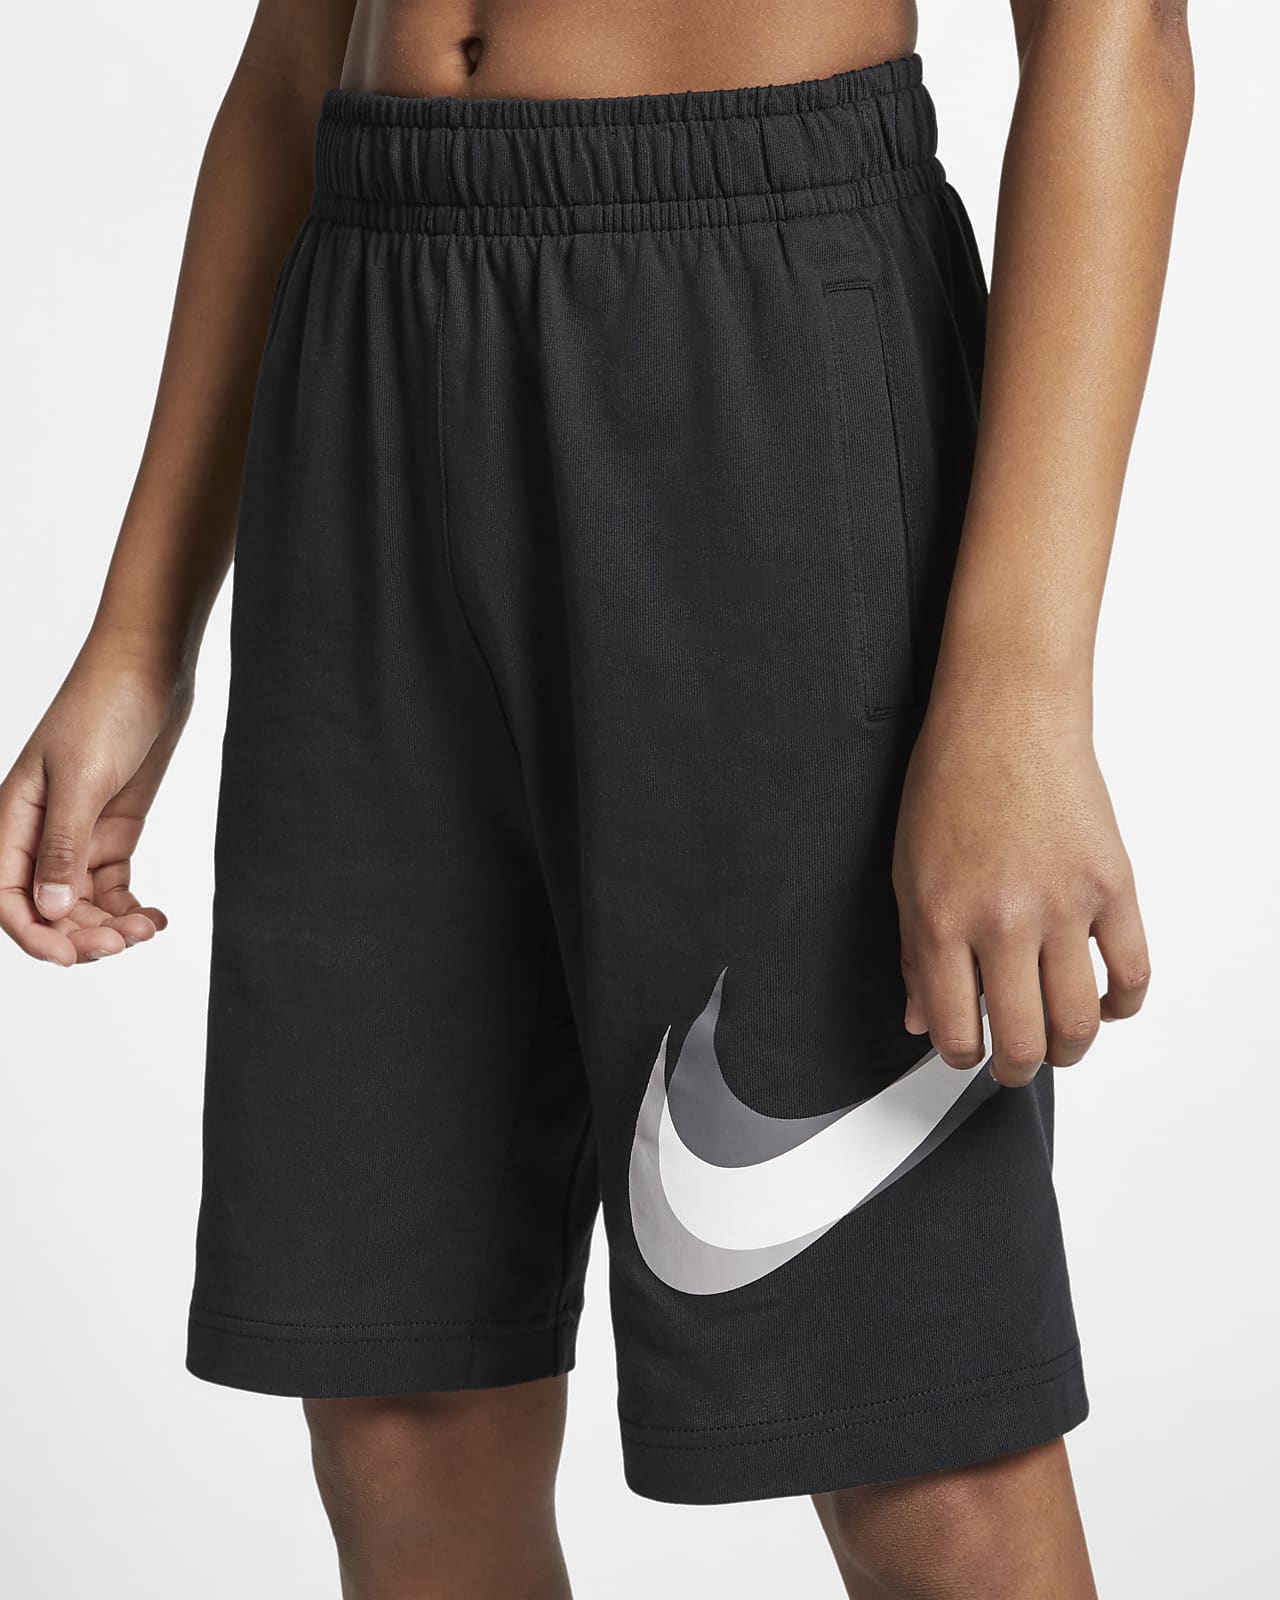 Nike Sportswear Older Kids' (Boys') Shorts